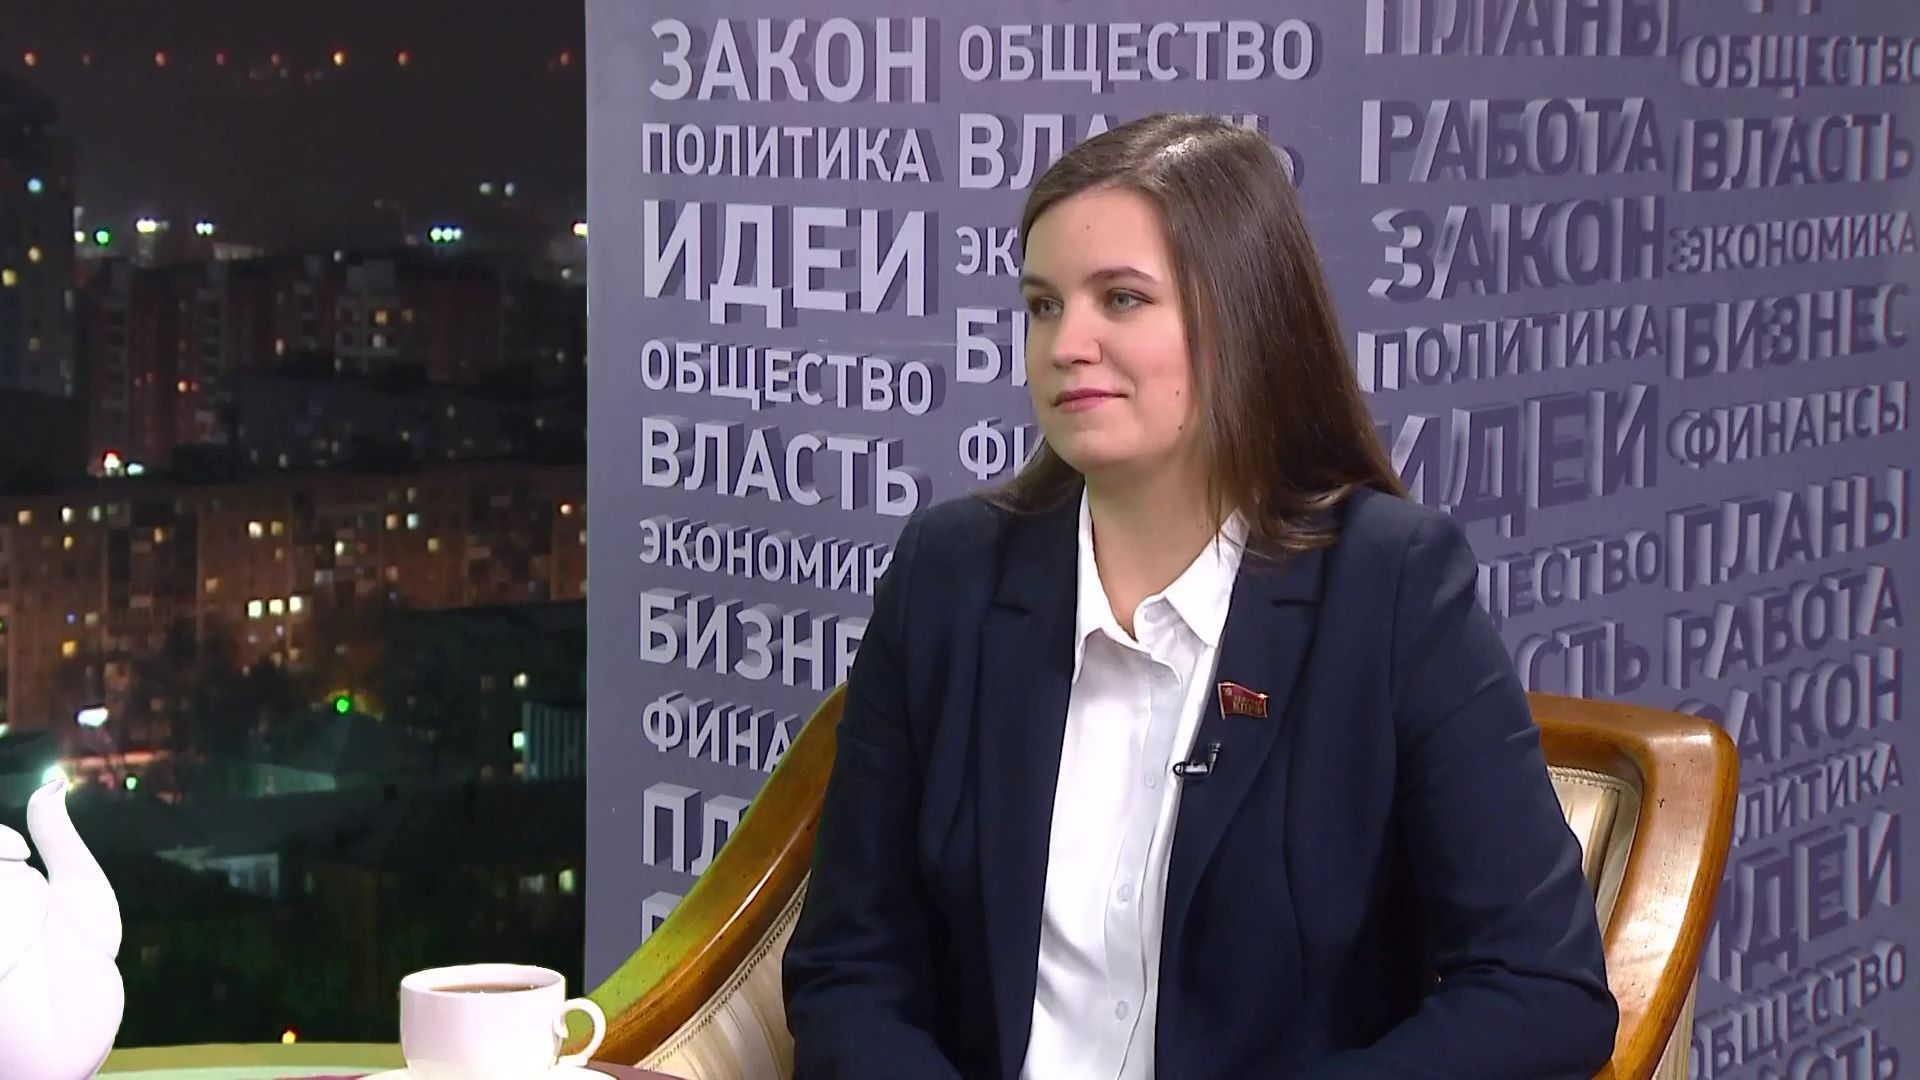 Анна Баранова, депутат Законодательного Собрания Пермского края